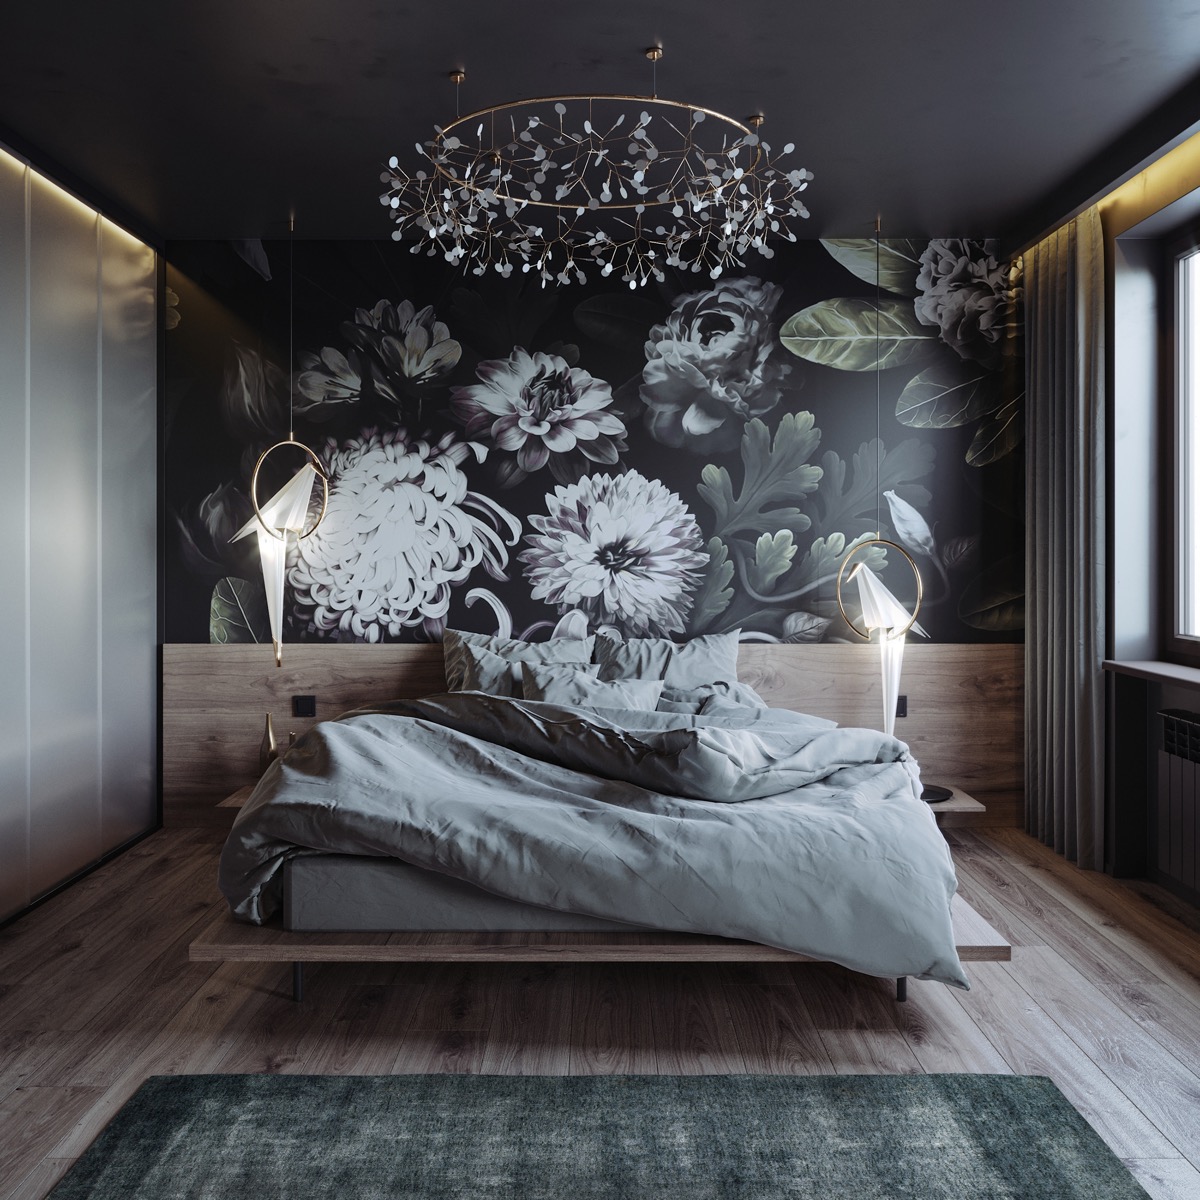 Tường hoa nghệ thuật cùng với hai đèn mặt dây chuyền theo chủ đề chim duyên dáng khiến phòng ngủ trở nên đặc biệt hơn.